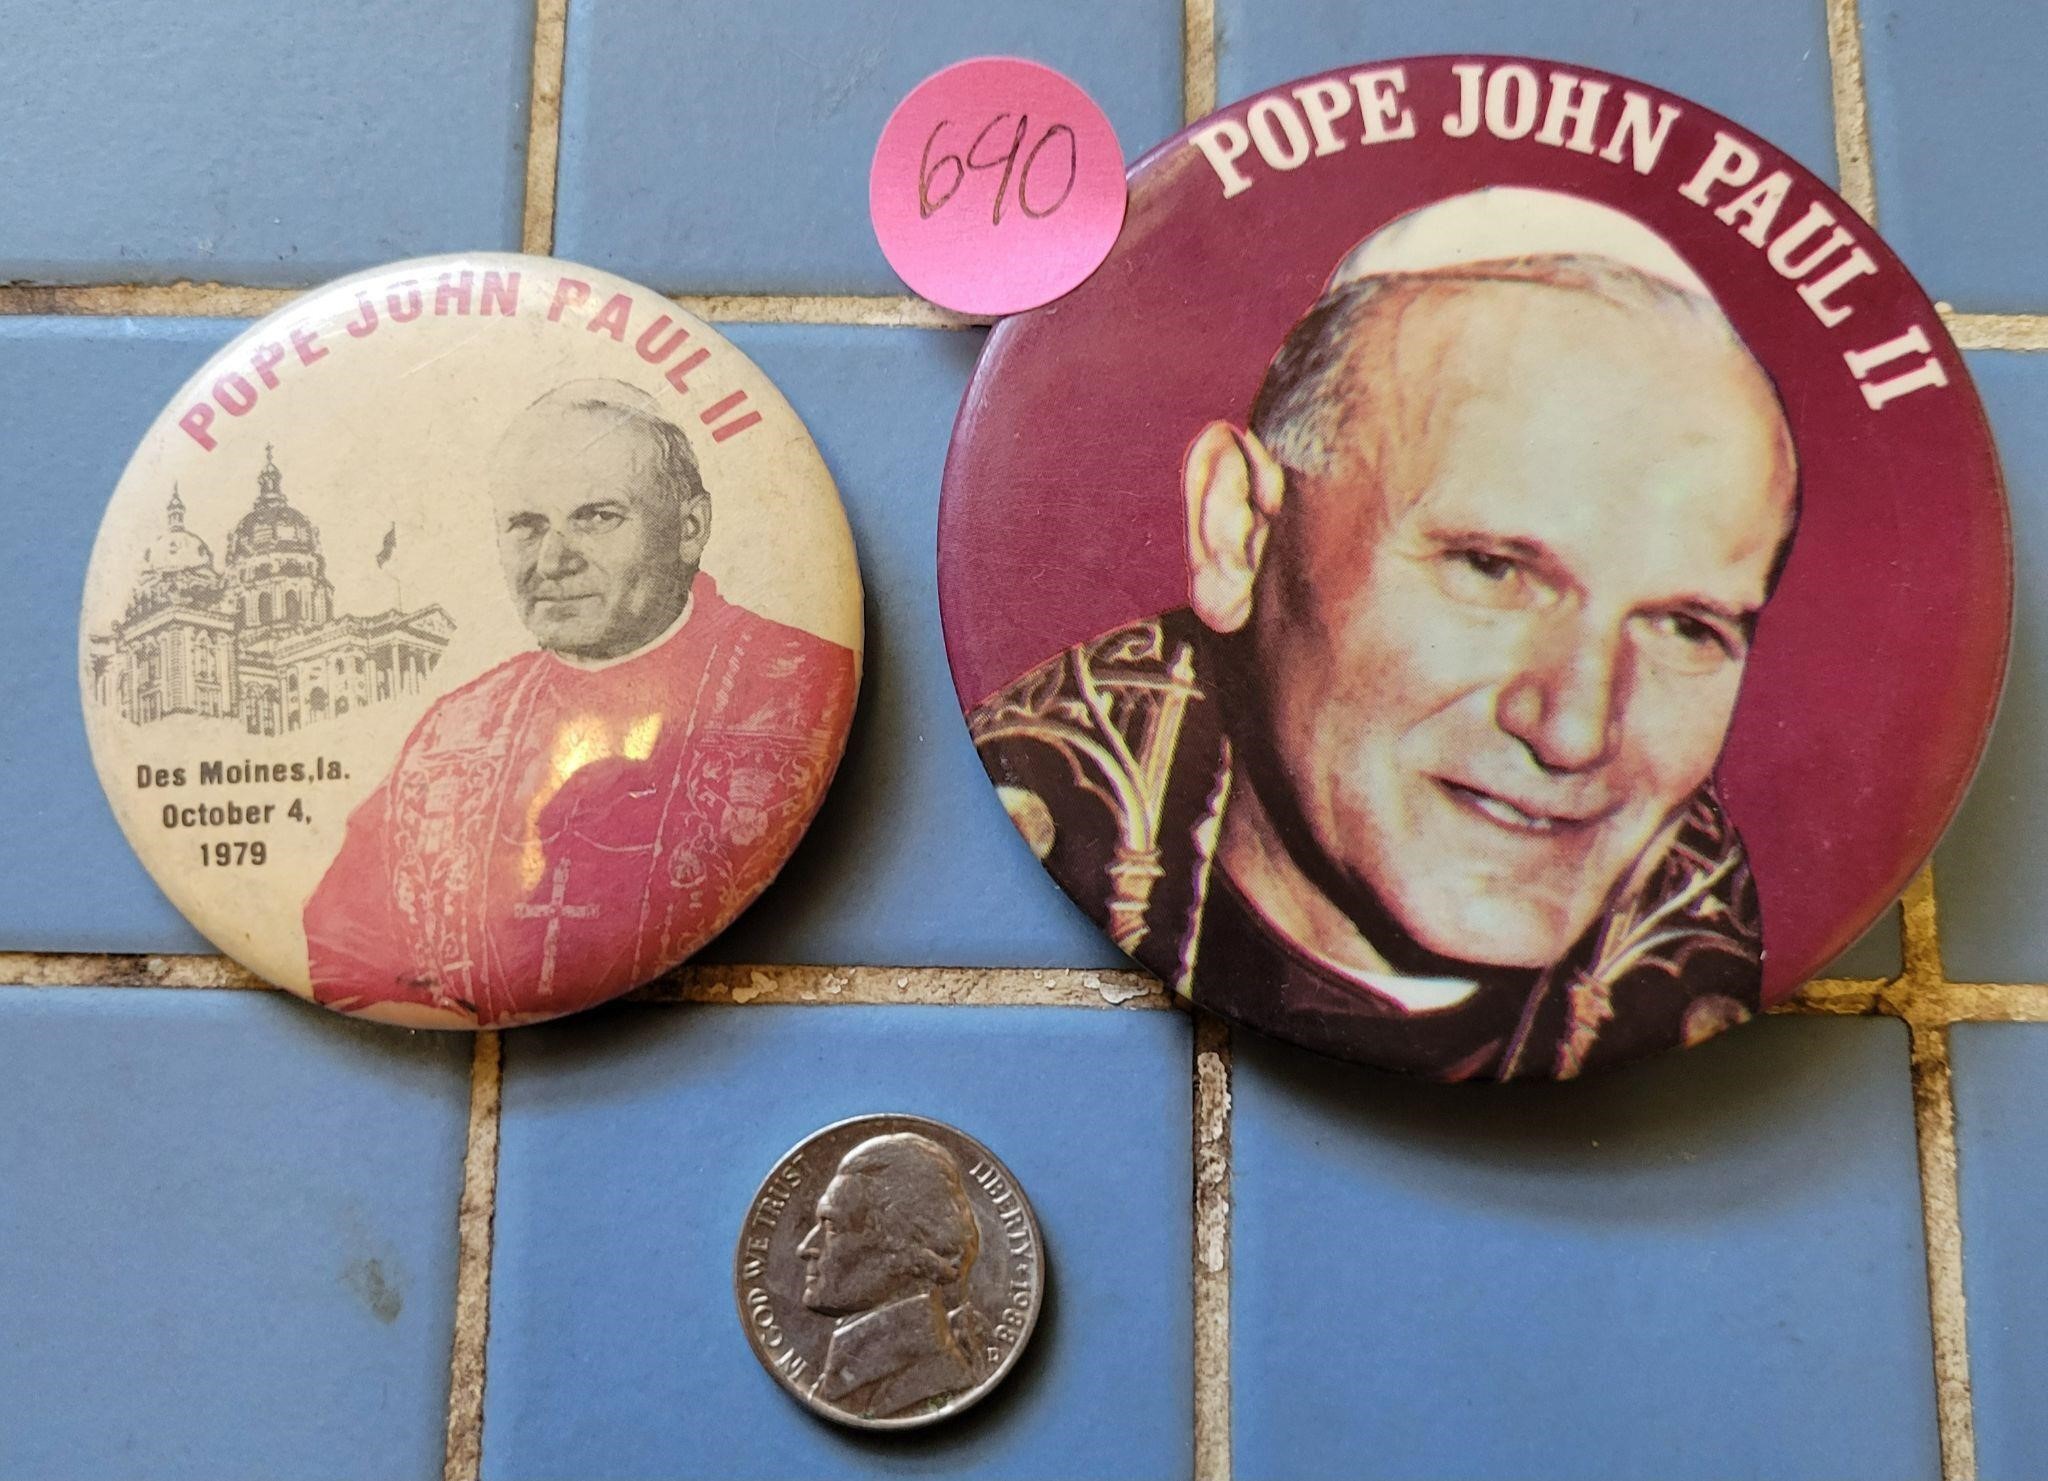 Vintage Pope John Paul II Buttons (Des Moines)